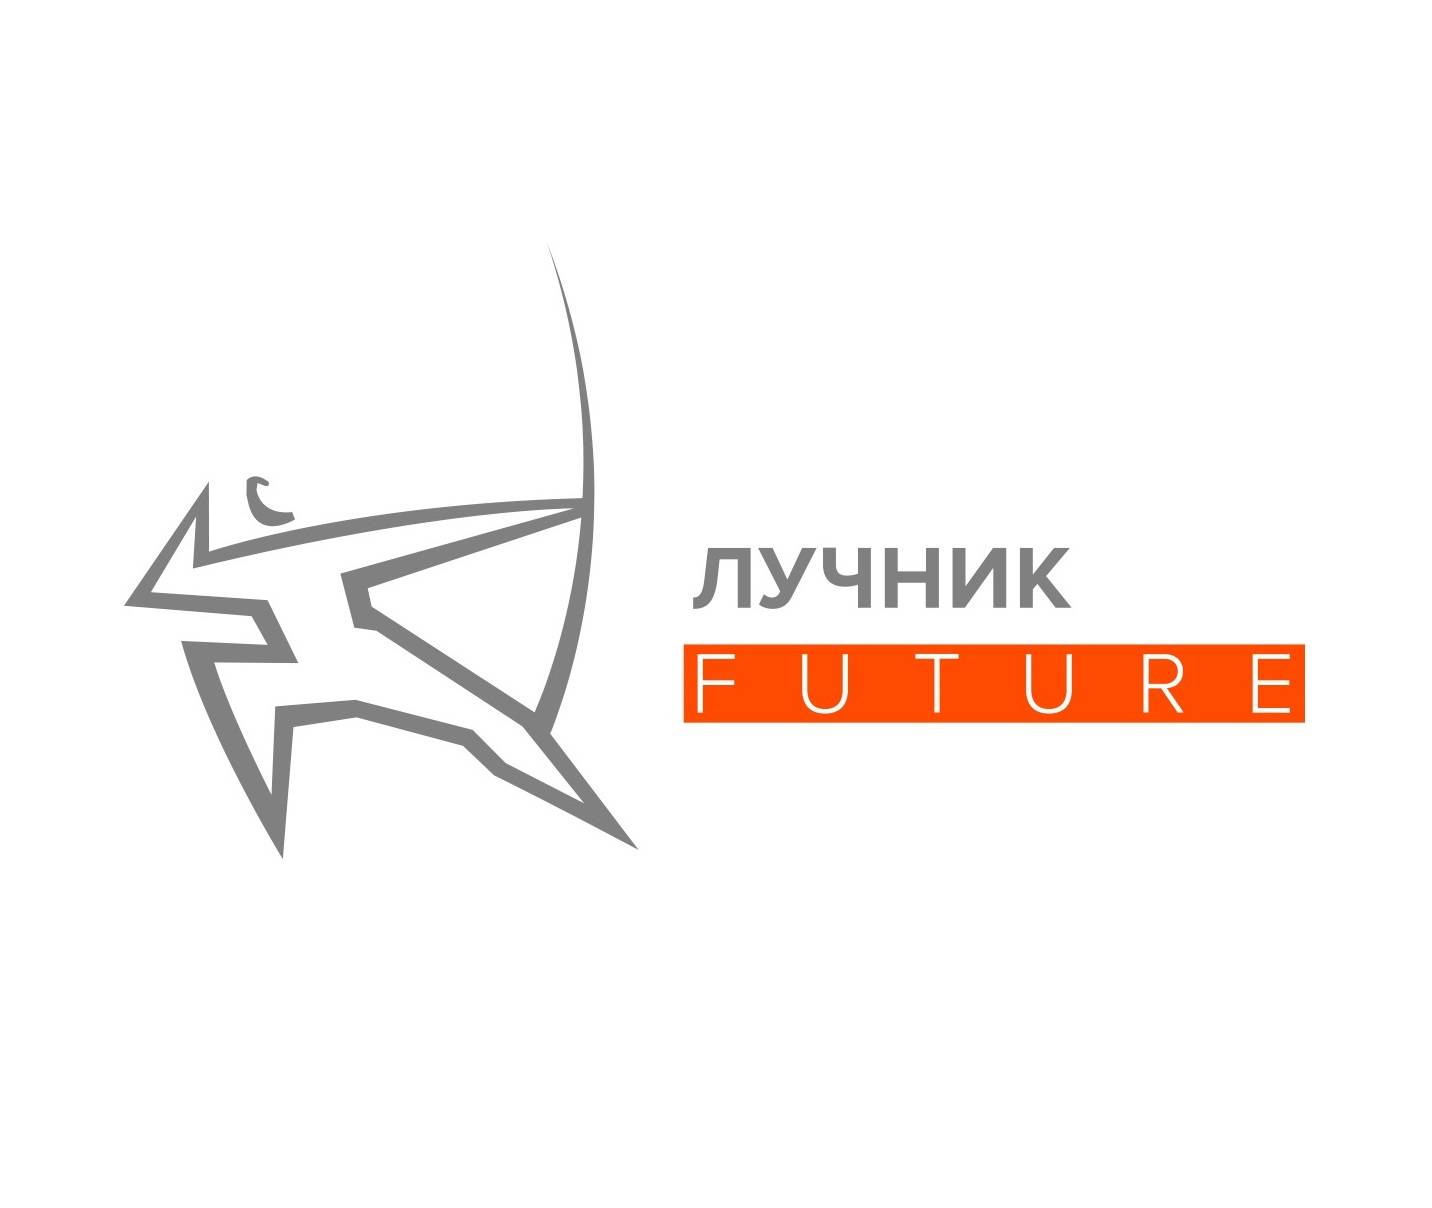 Студенты СПбГЭУ прошли в финал конкурса «Лучник Future»